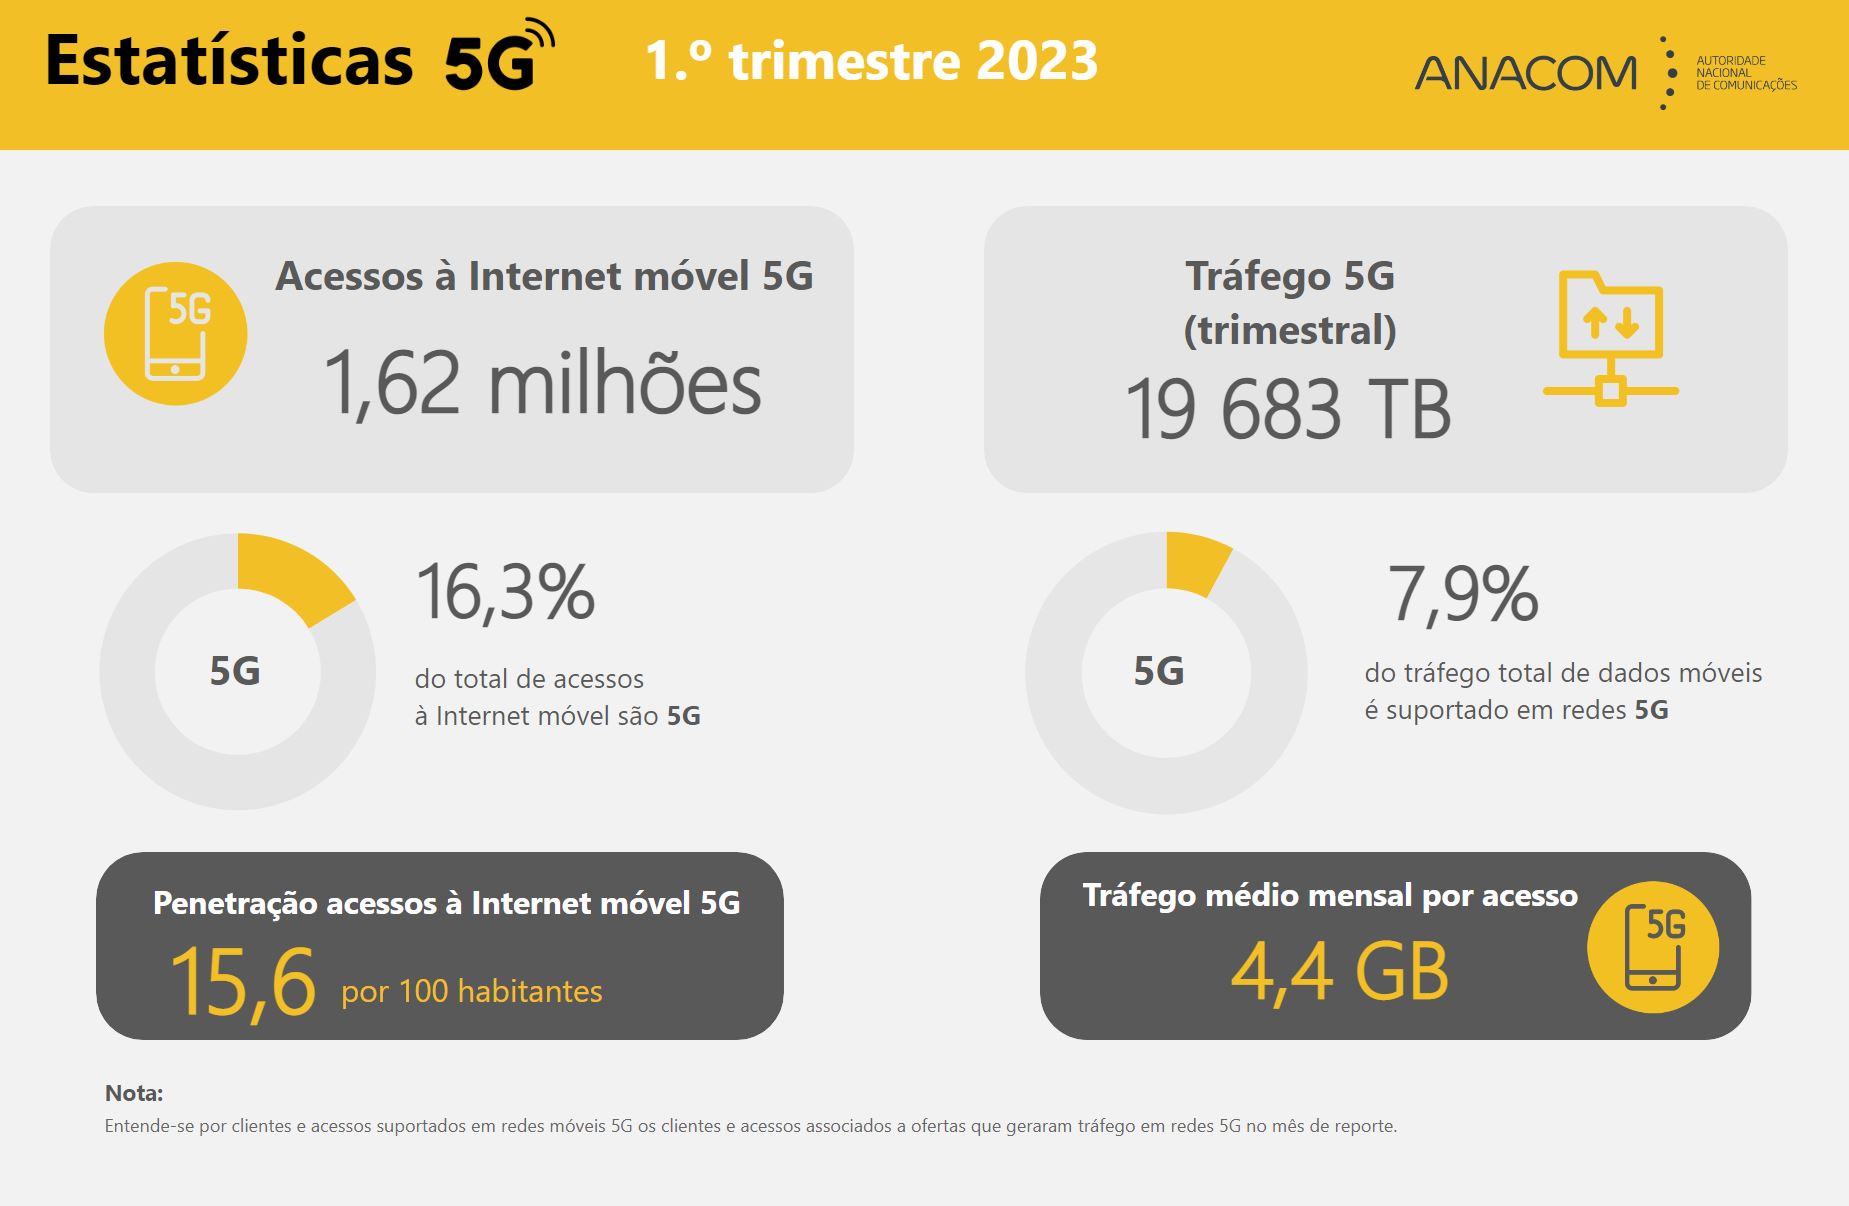 Infografia com a informação mensal sobre serviços retalhistas 5G referente ao 1.º trimestre de 2023.